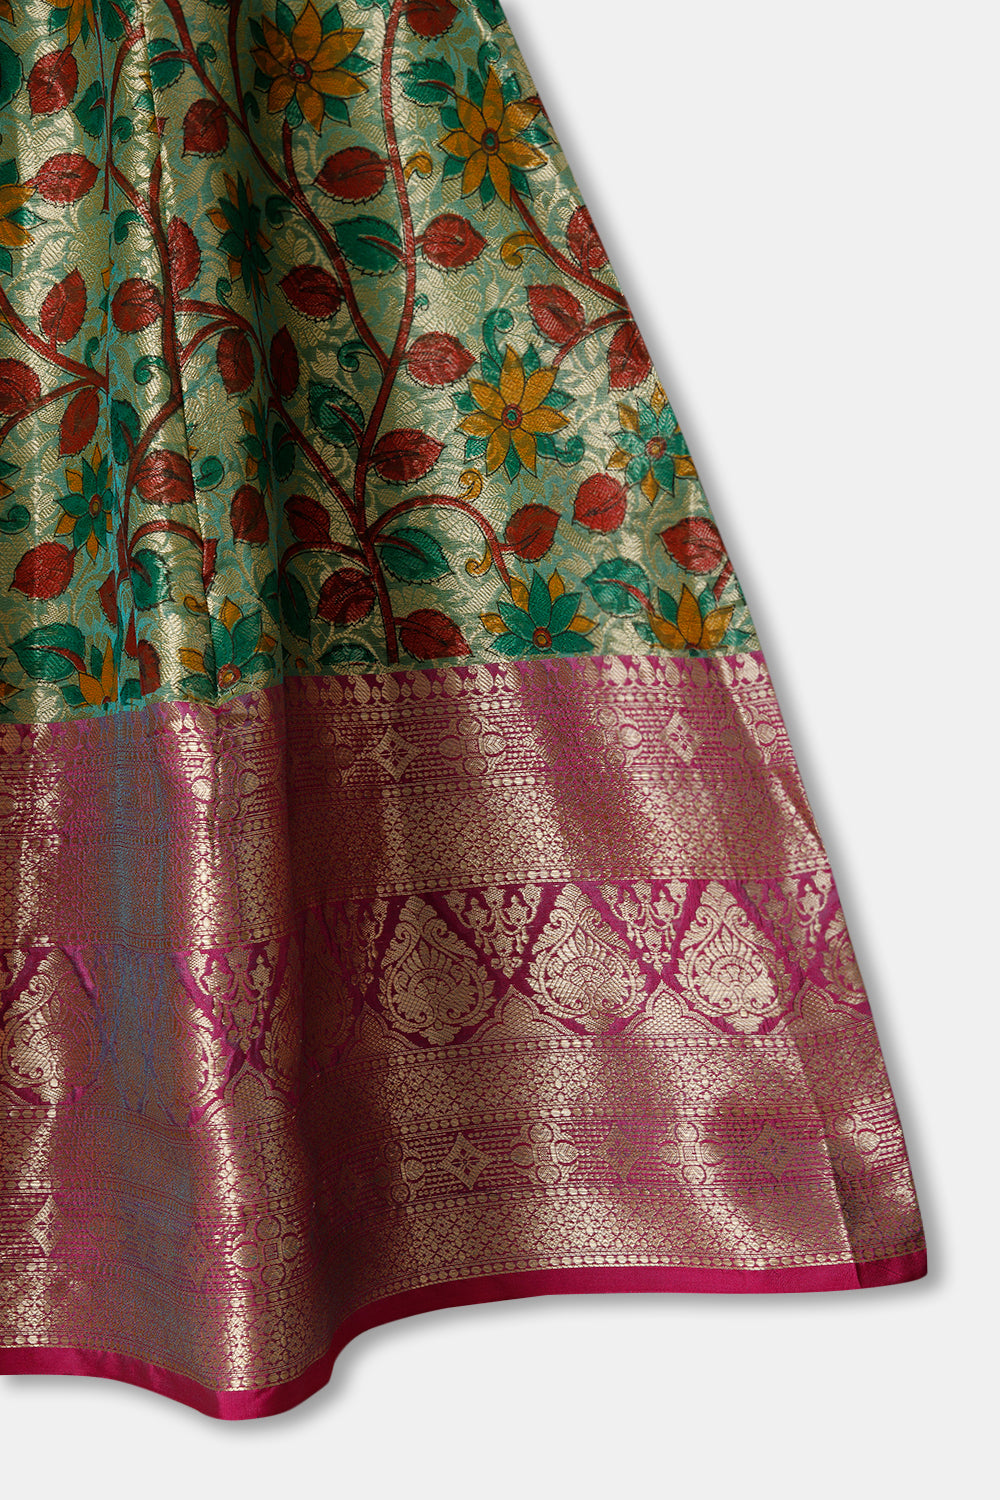 Chittythalli Girls Ethnic wear  Cotton blend  Pavadai Set with  Round Neck Puff Sleeve - Red - PS36